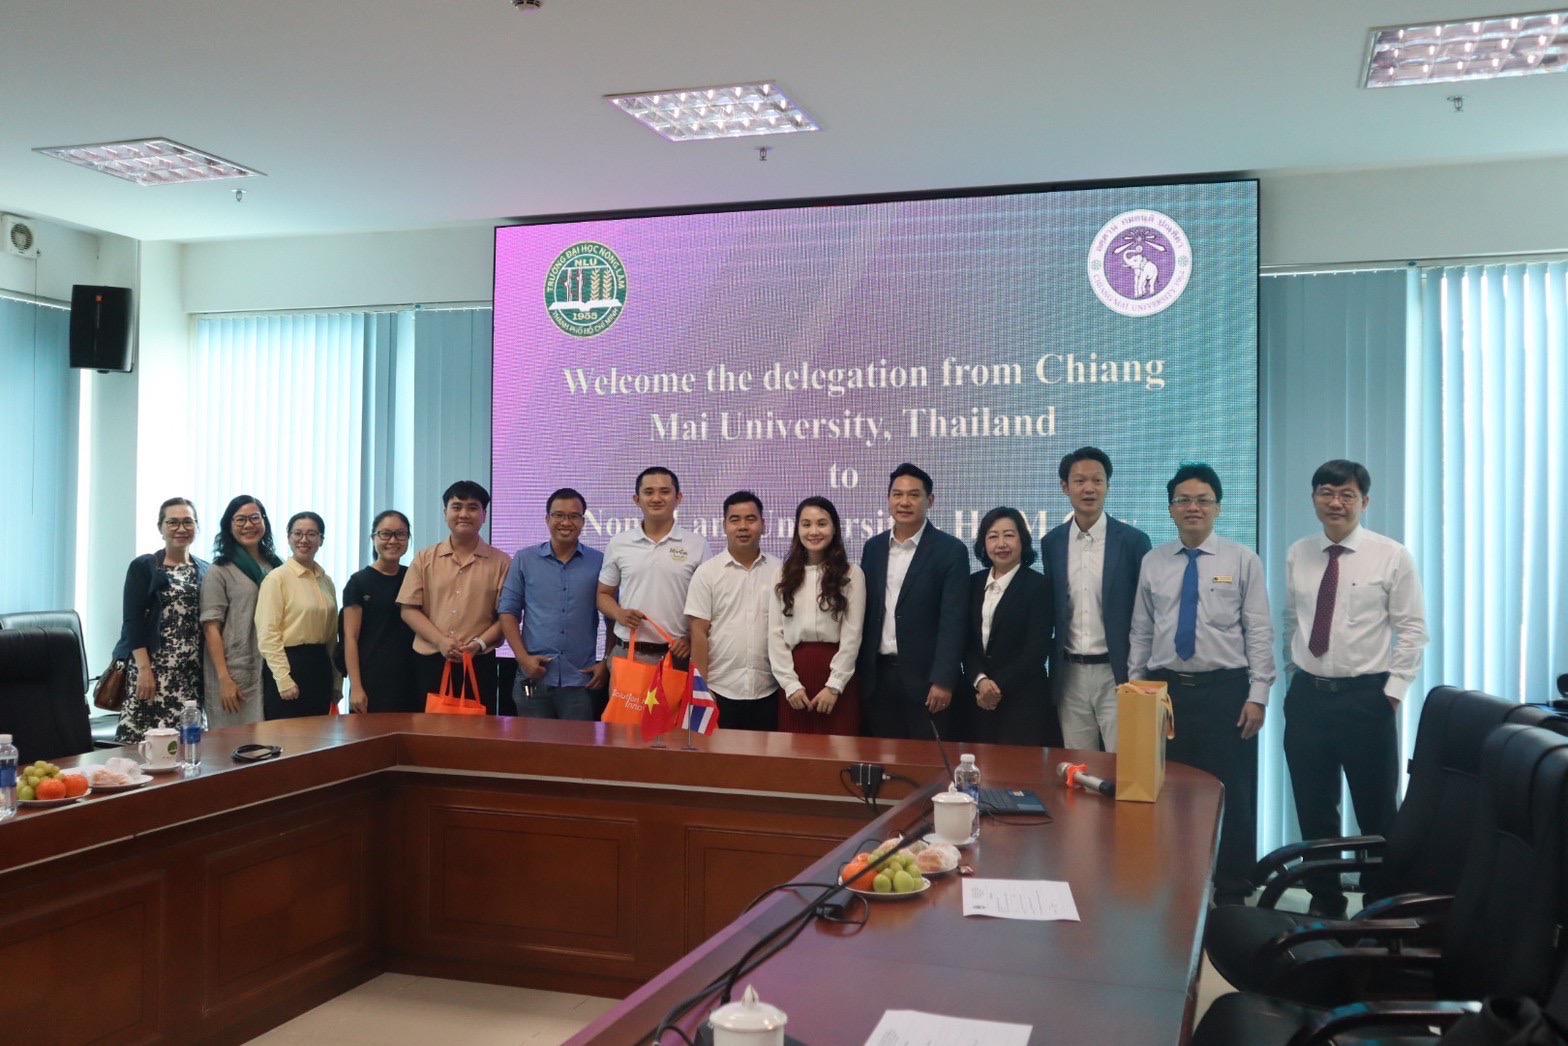 หารือความร่วมมือทางวิชาการกับ Nong Lam University